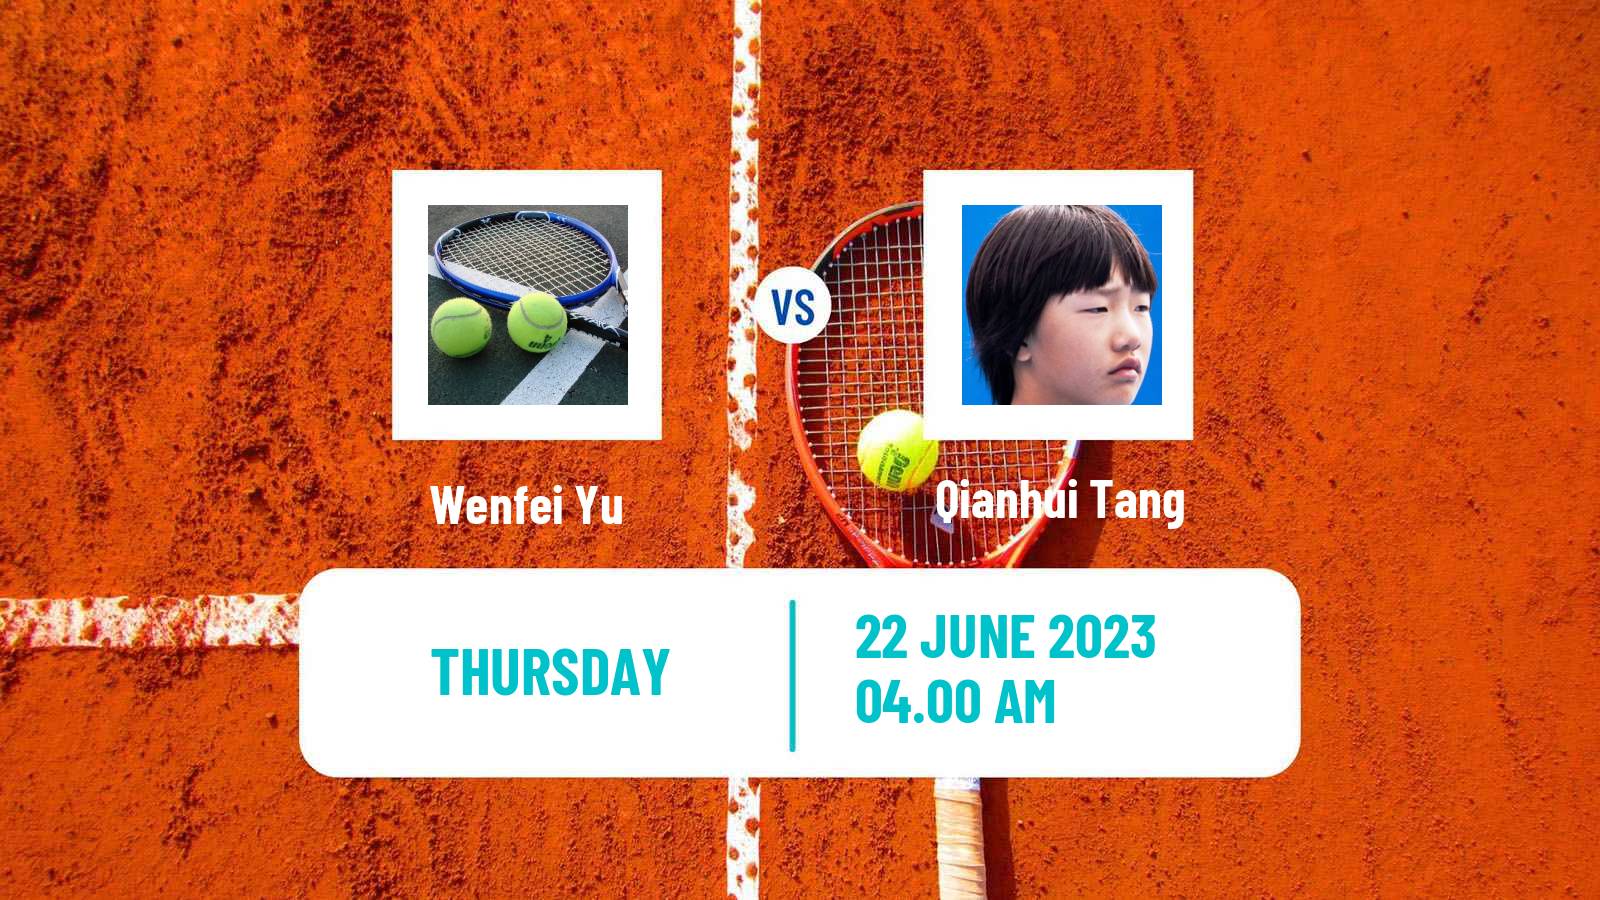 Tennis ITF W15 Tianjin 2 Women Wenfei Yu - Qianhui Tang